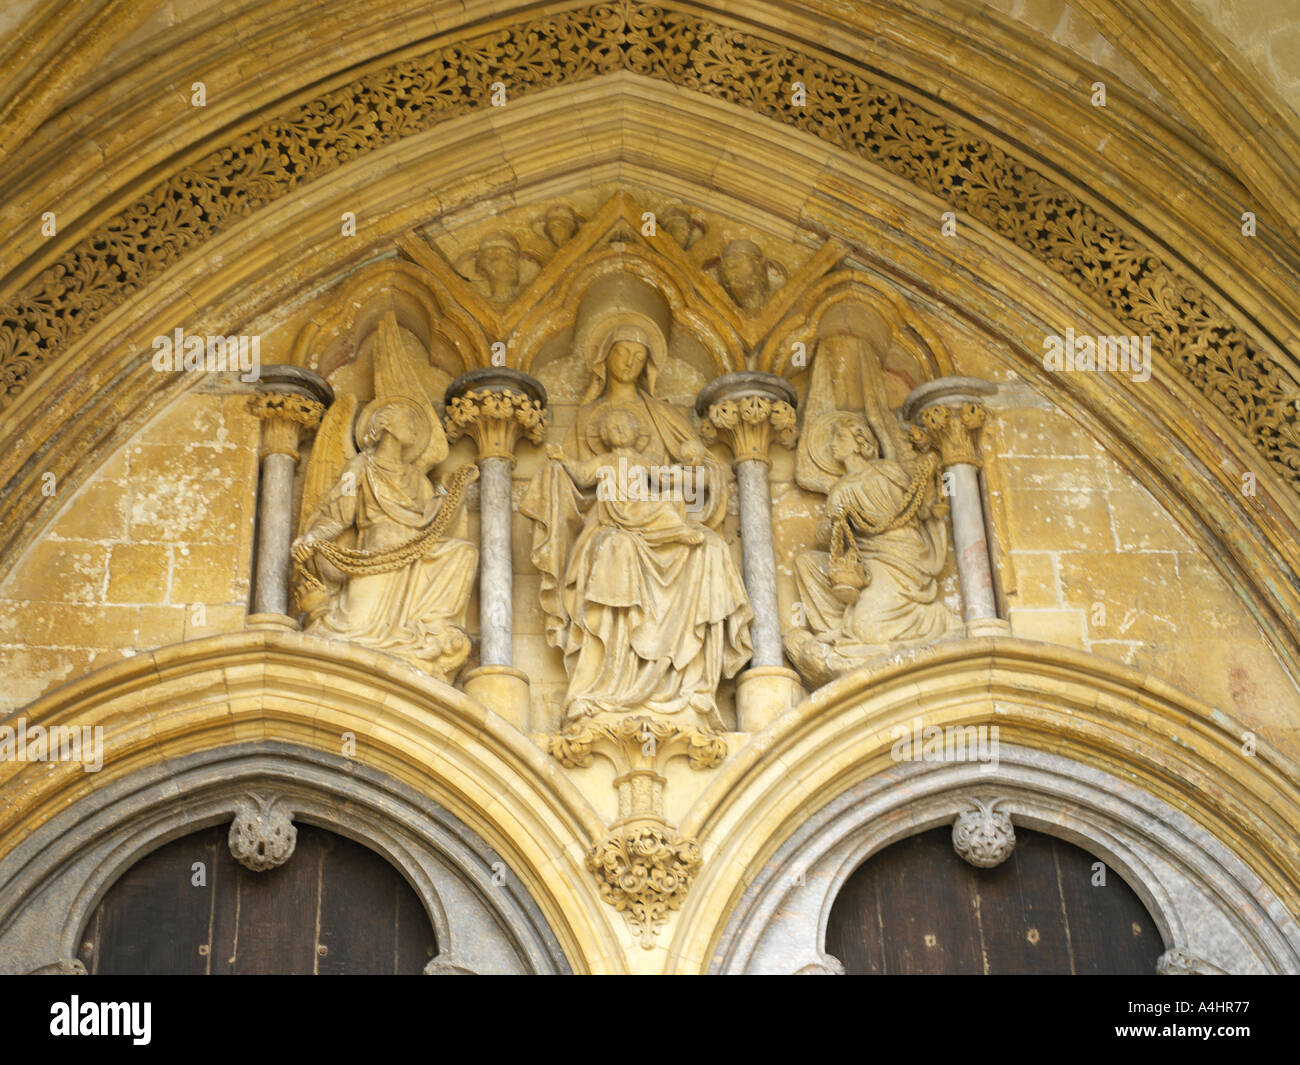 La Cattedrale di Salisbury Wiltshire, Inghilterra Vergine Maria bambino sopra le porte affiancato da angeli Censing fronte ovest Foto Stock